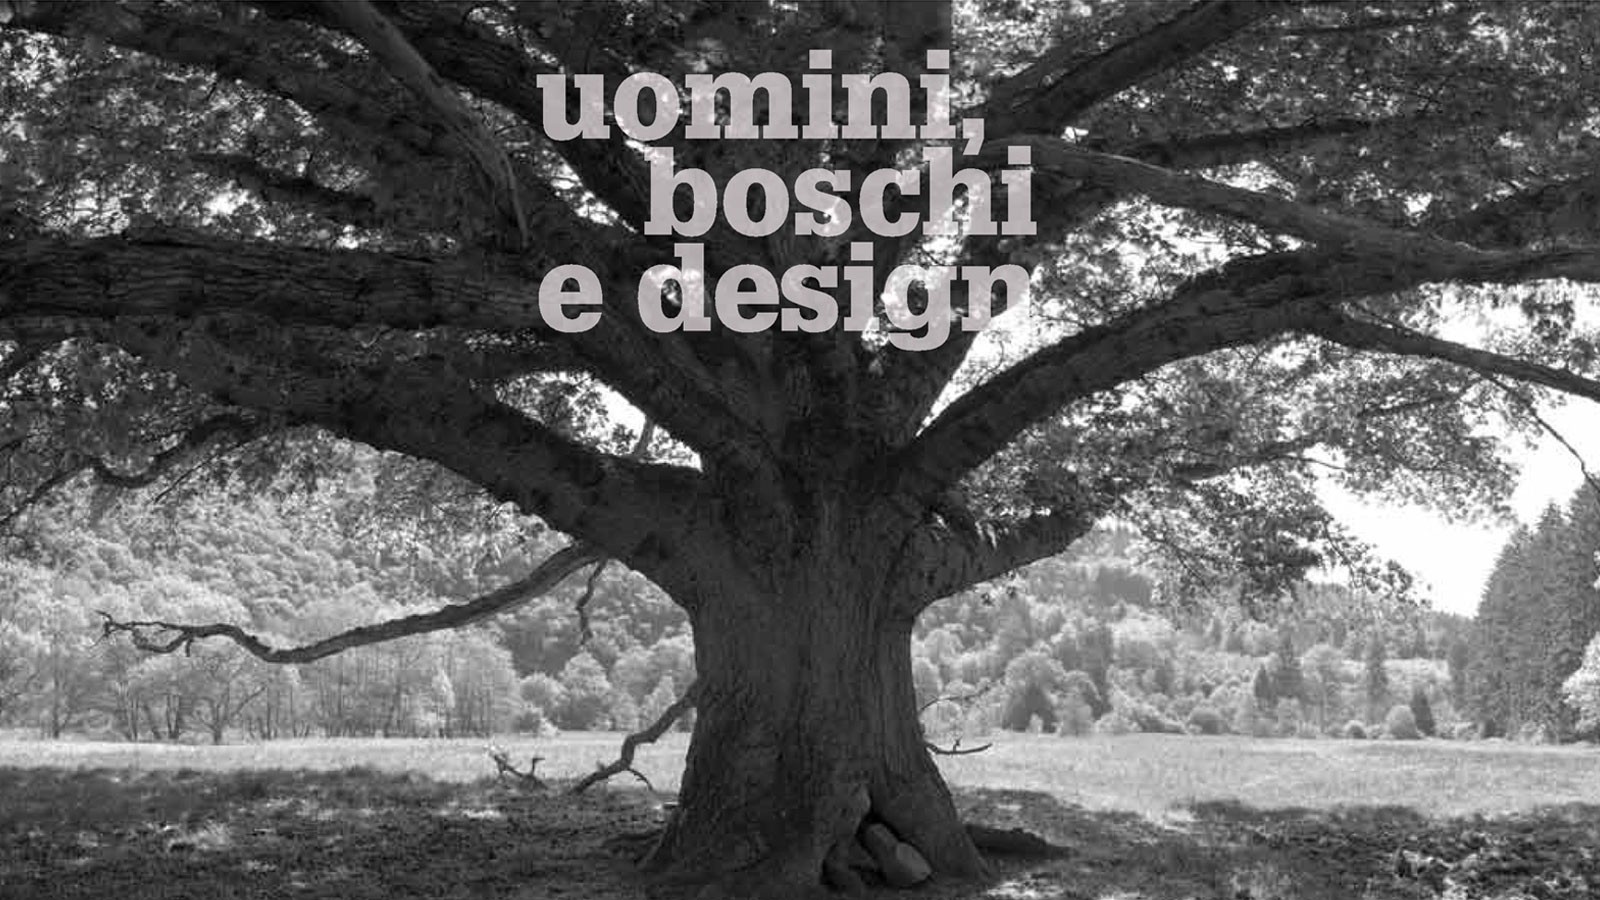 uomini boschi e design